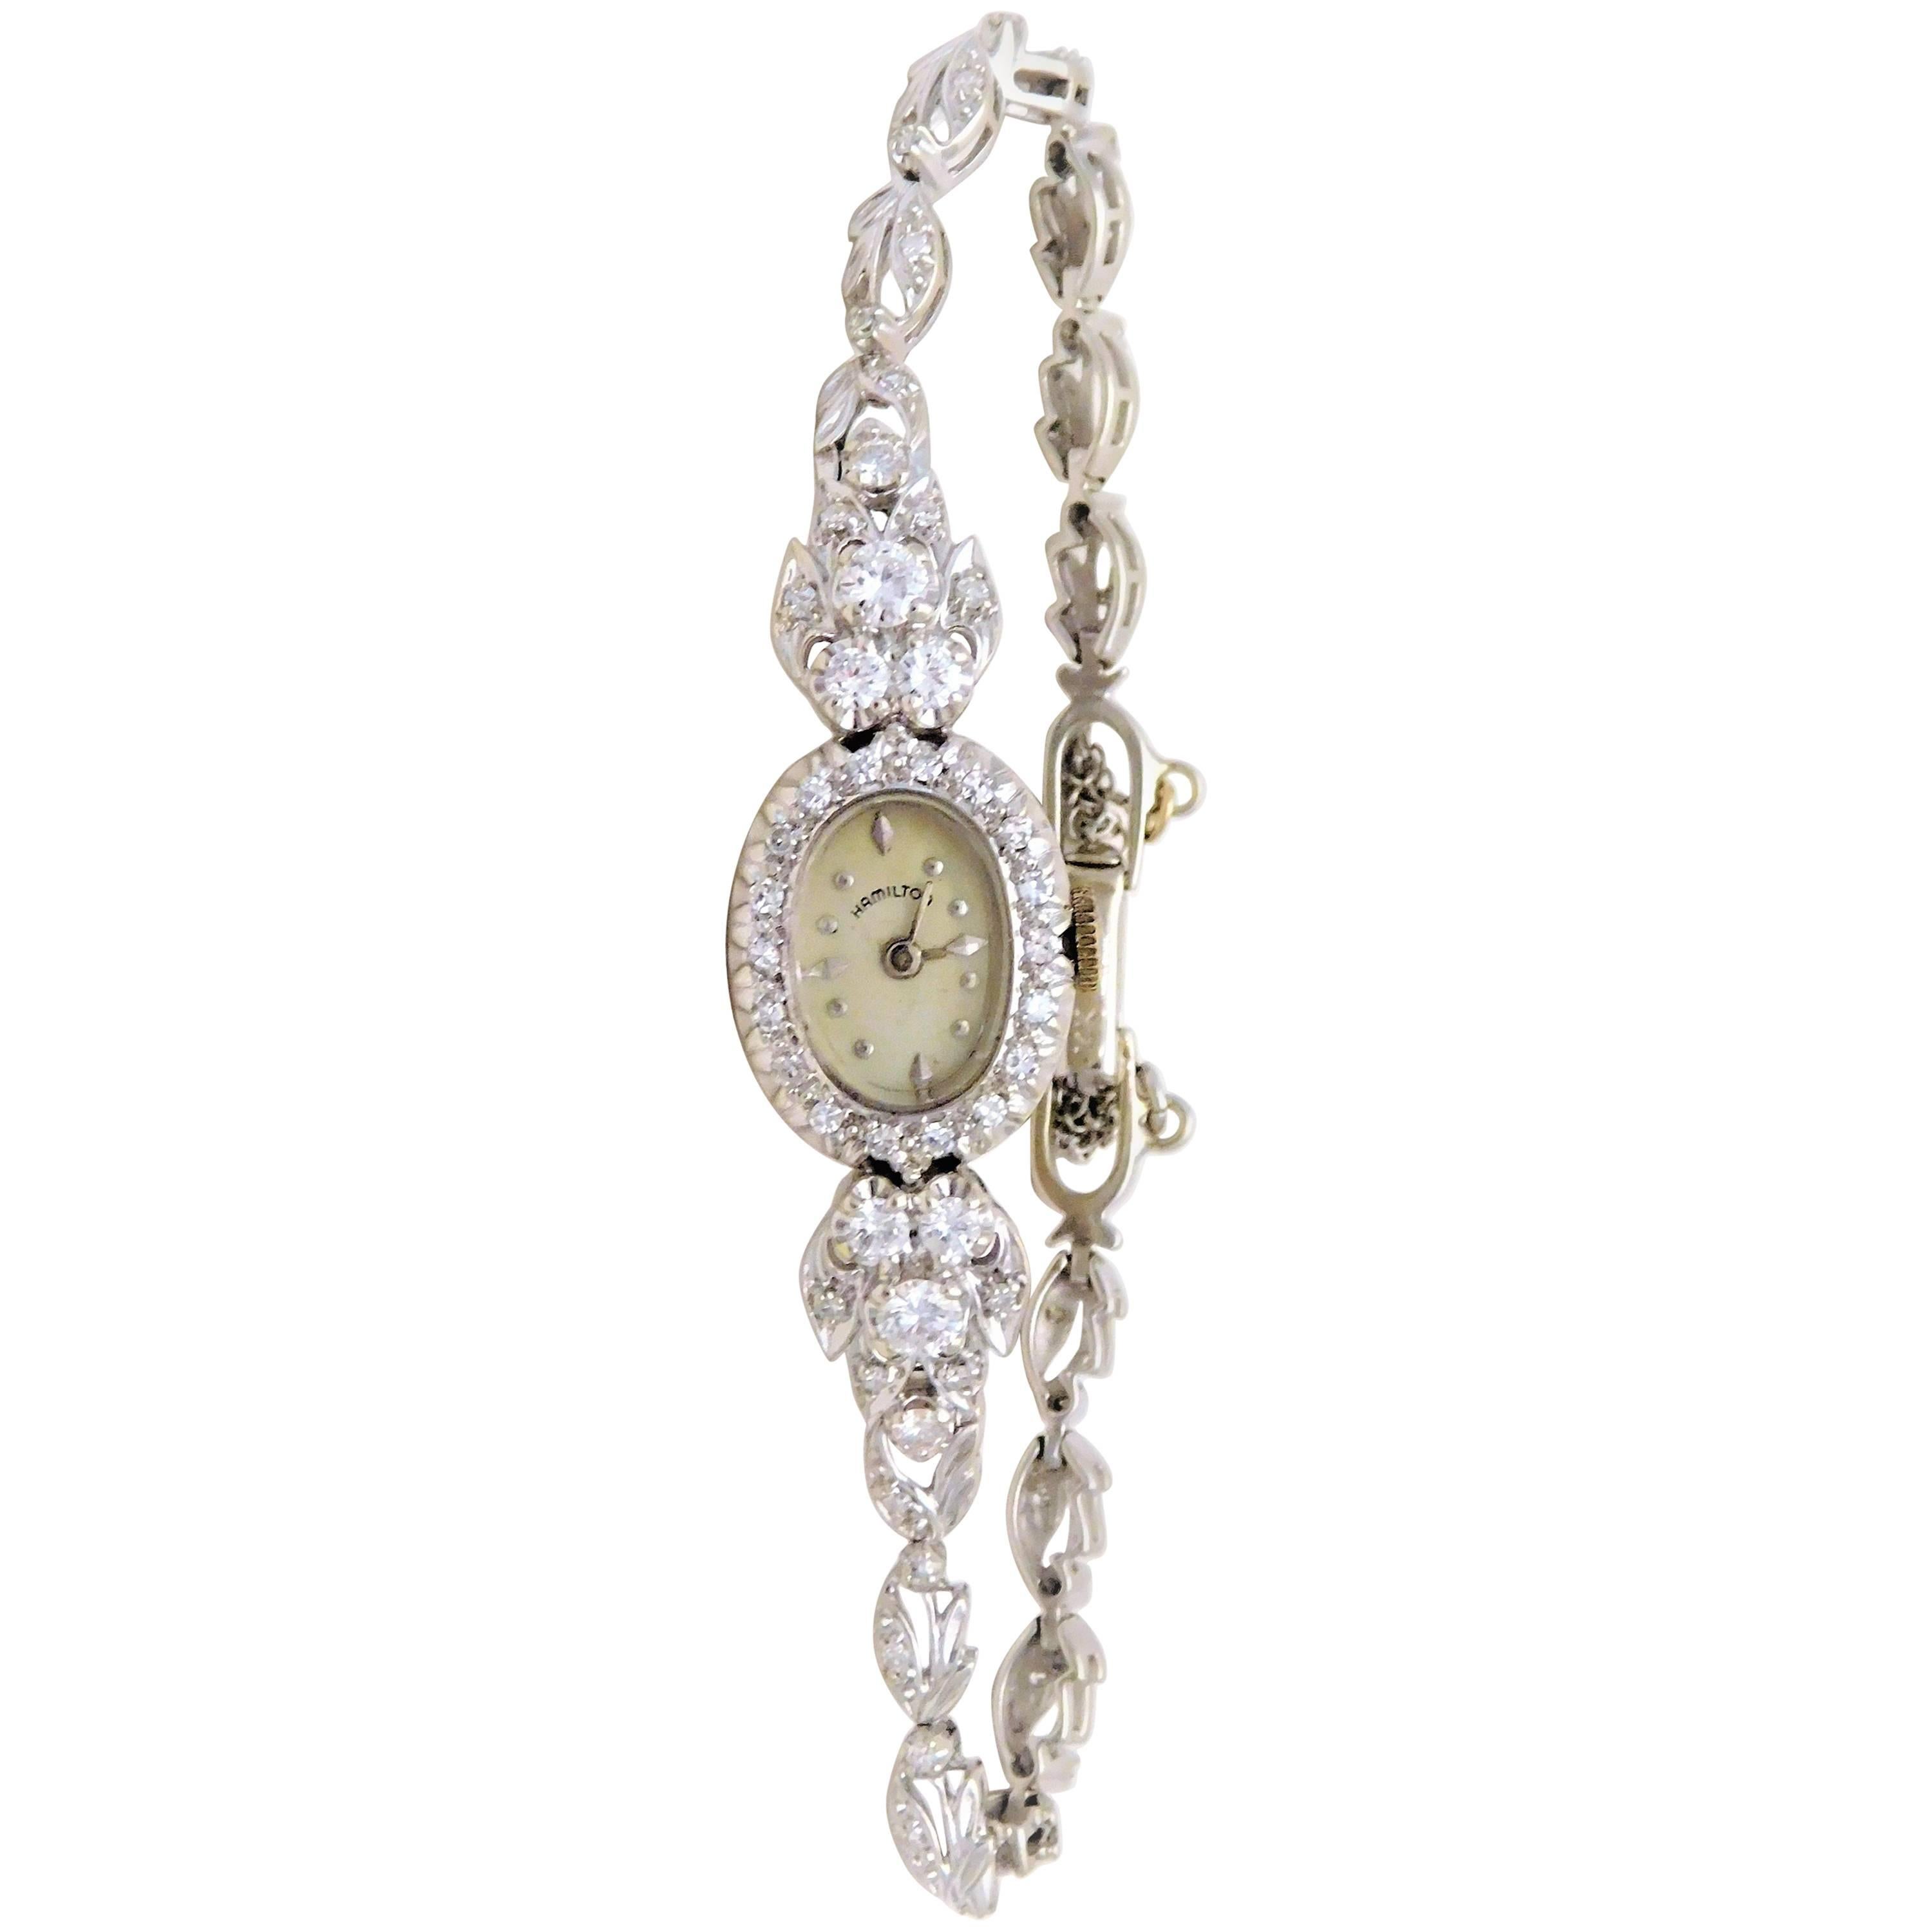 Hamilton Ladies White Gold Diamond Wristwatch, circa 1920